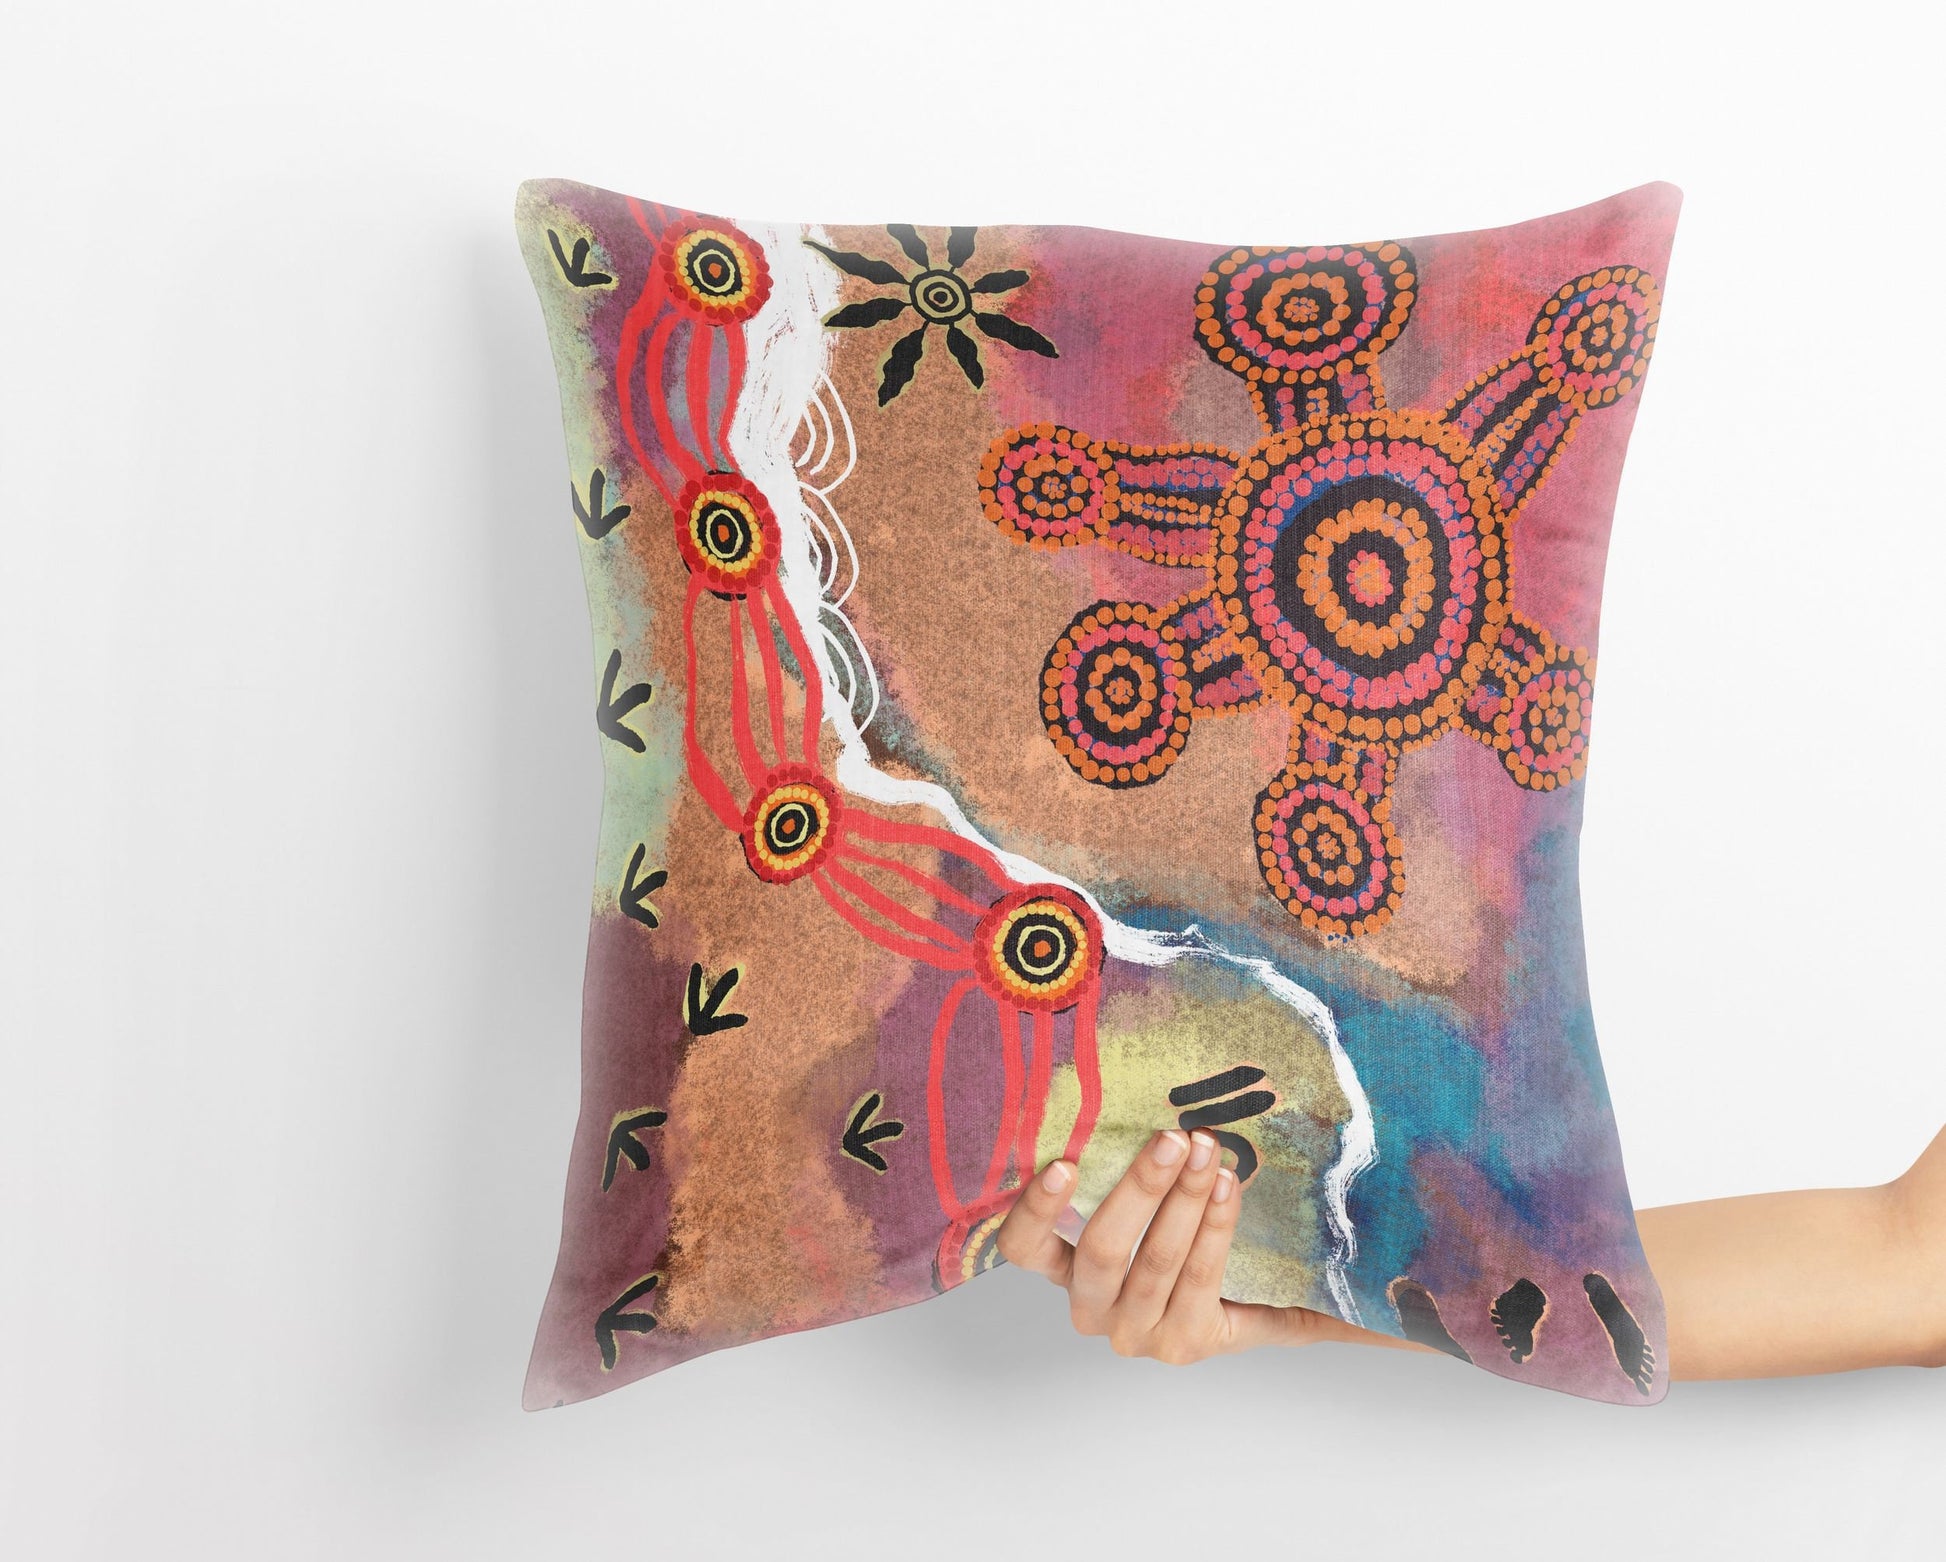 Australian Aboriginal Art, Pillow Case, Abstract Throw Pillow, Colorful Pillow Case, Modern Pillow, 18 X 18 Pillow Covers, Housewarming Gift